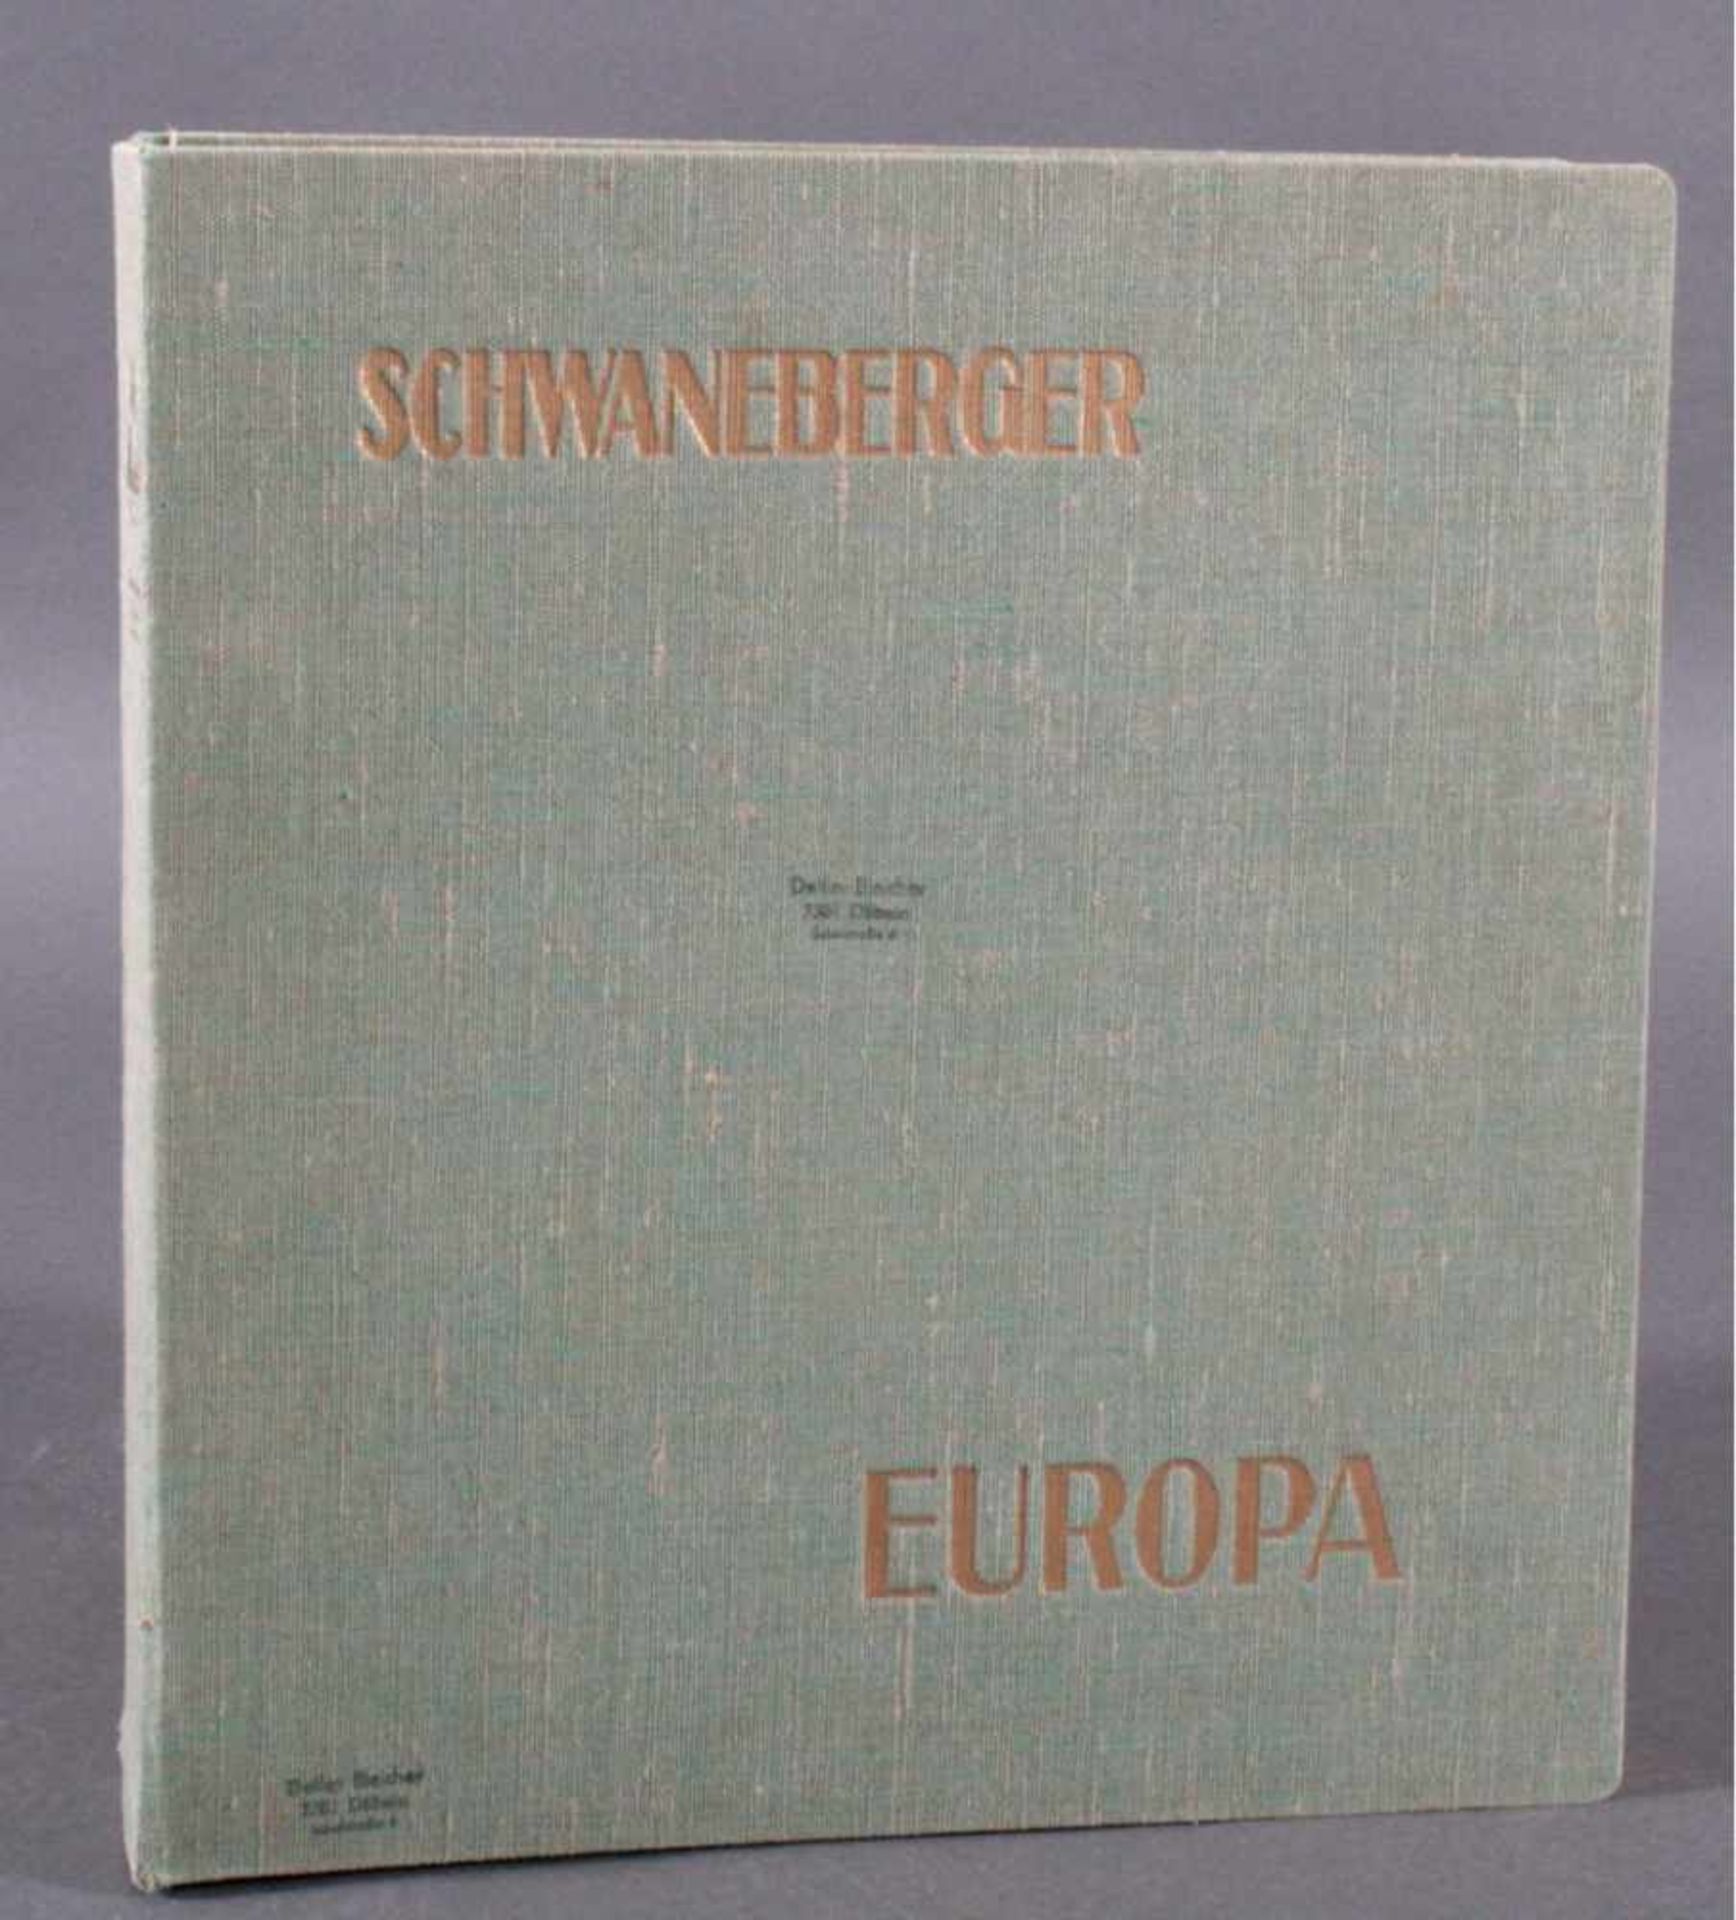 SCHWANNENBERGER SCHWARTE aus Döbelner NachlassSchwanenberger Briefmarken - Album, Ausgabe 1937 - Image 2 of 2